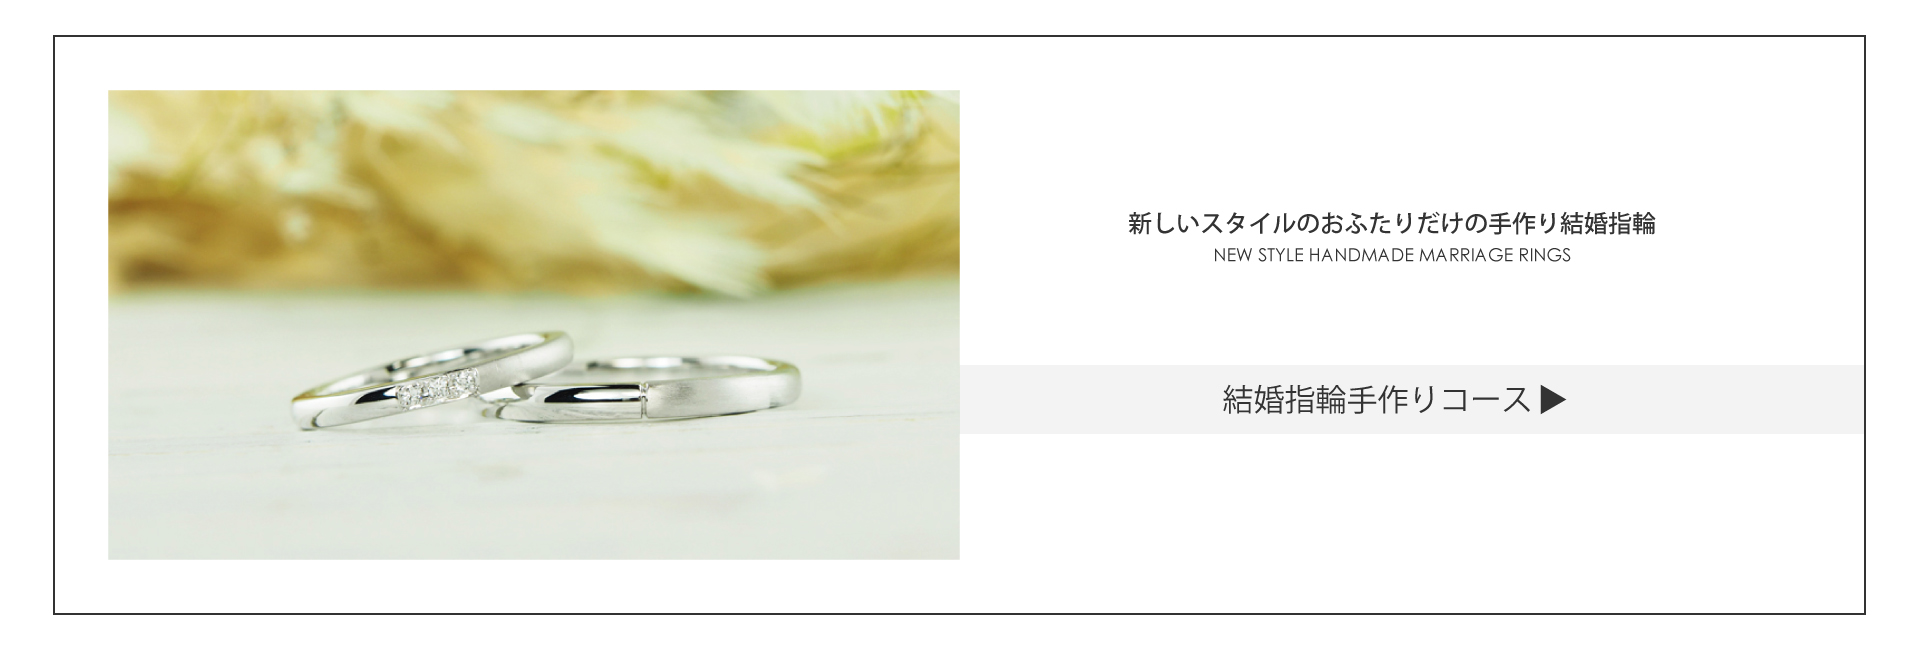 結婚指輪手作りコースは、新しいスタイルのふたりで作る結婚指輪です